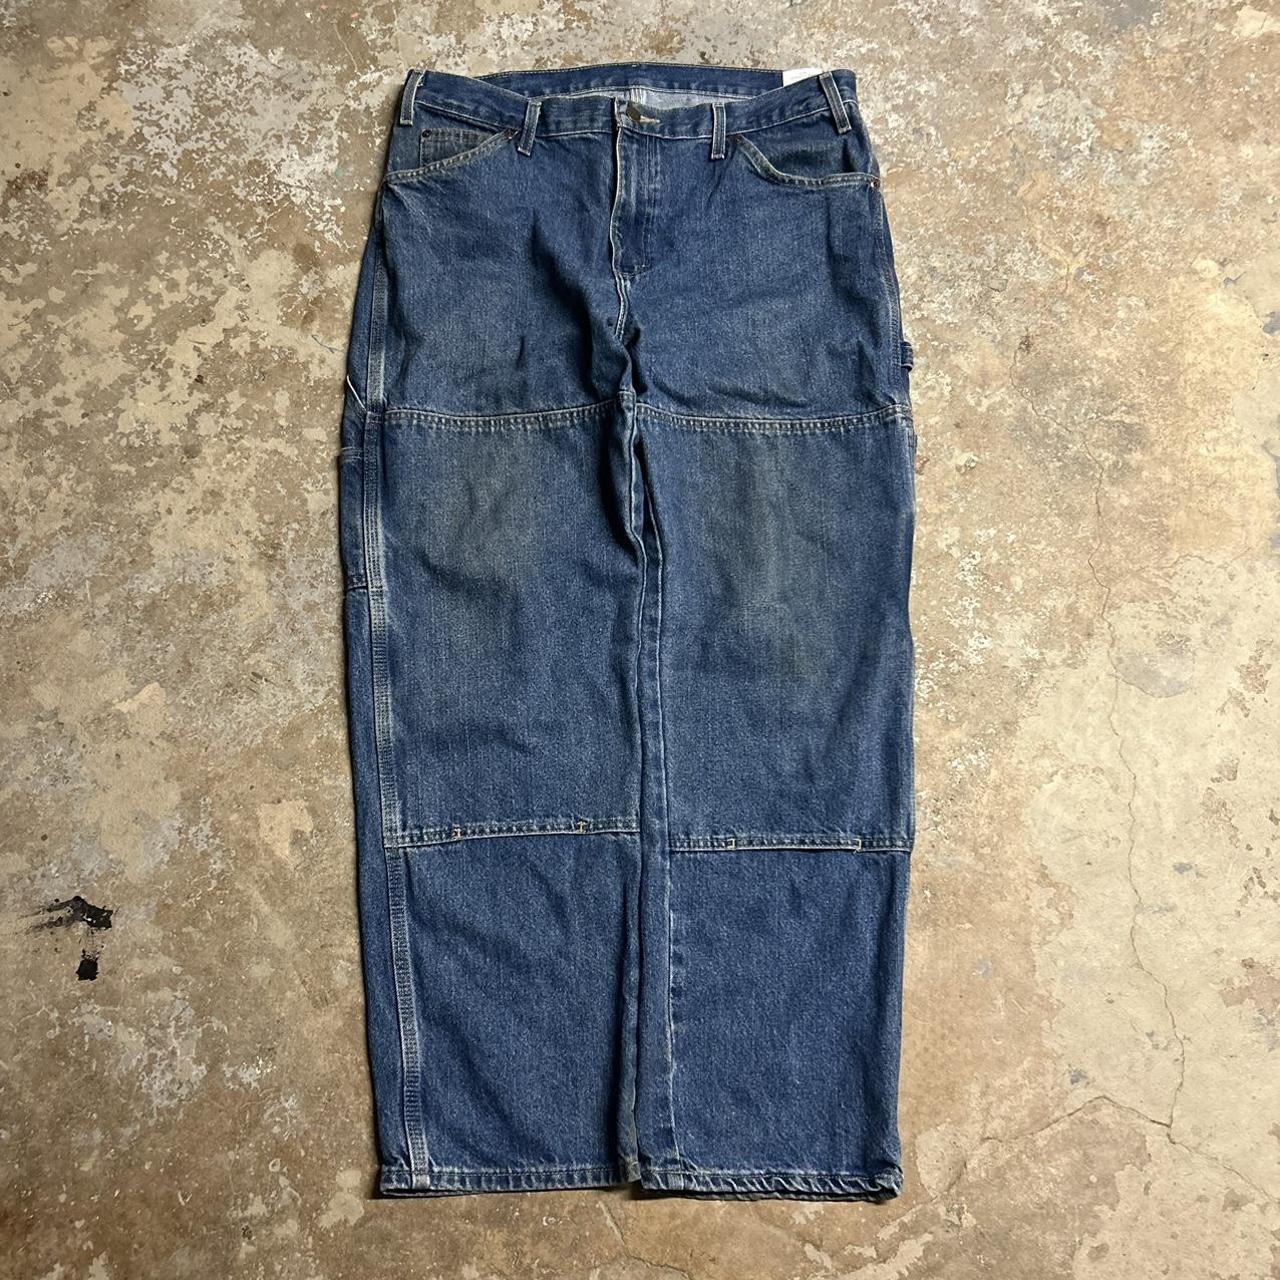 90's Dickies Double Knee Vintage Denim Jeans No... - Depop